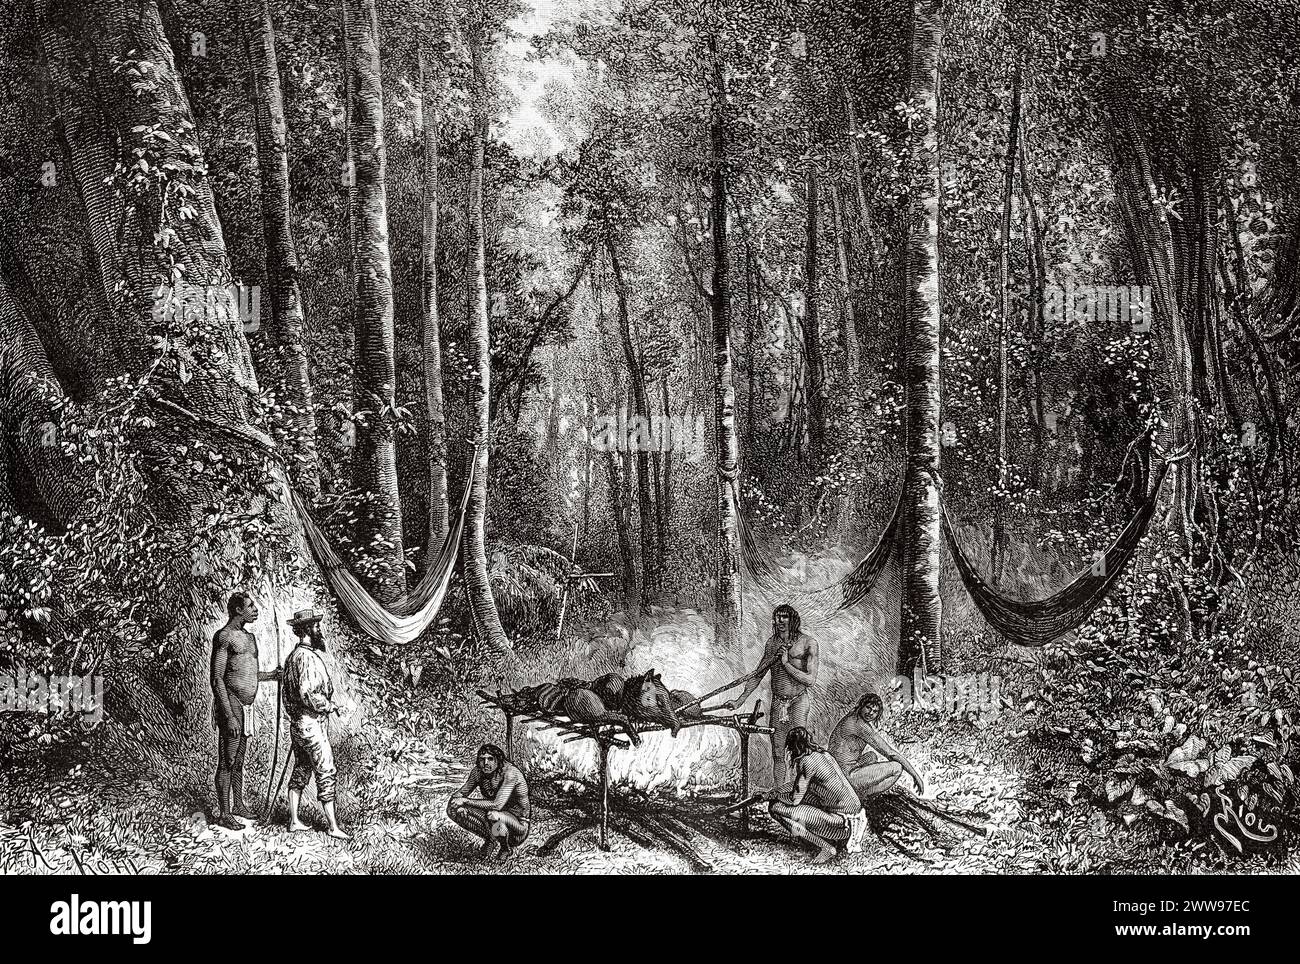 Nativi che arrostono un tapir nella giungla, Guyana francese, Sud America. Disegno di Edouard Riou (1833 - 1900) da Cayenne alle Ande (1878-1879) di Jules Crevaux (1847 - 1882) le Tour du Monde 1880 Foto Stock